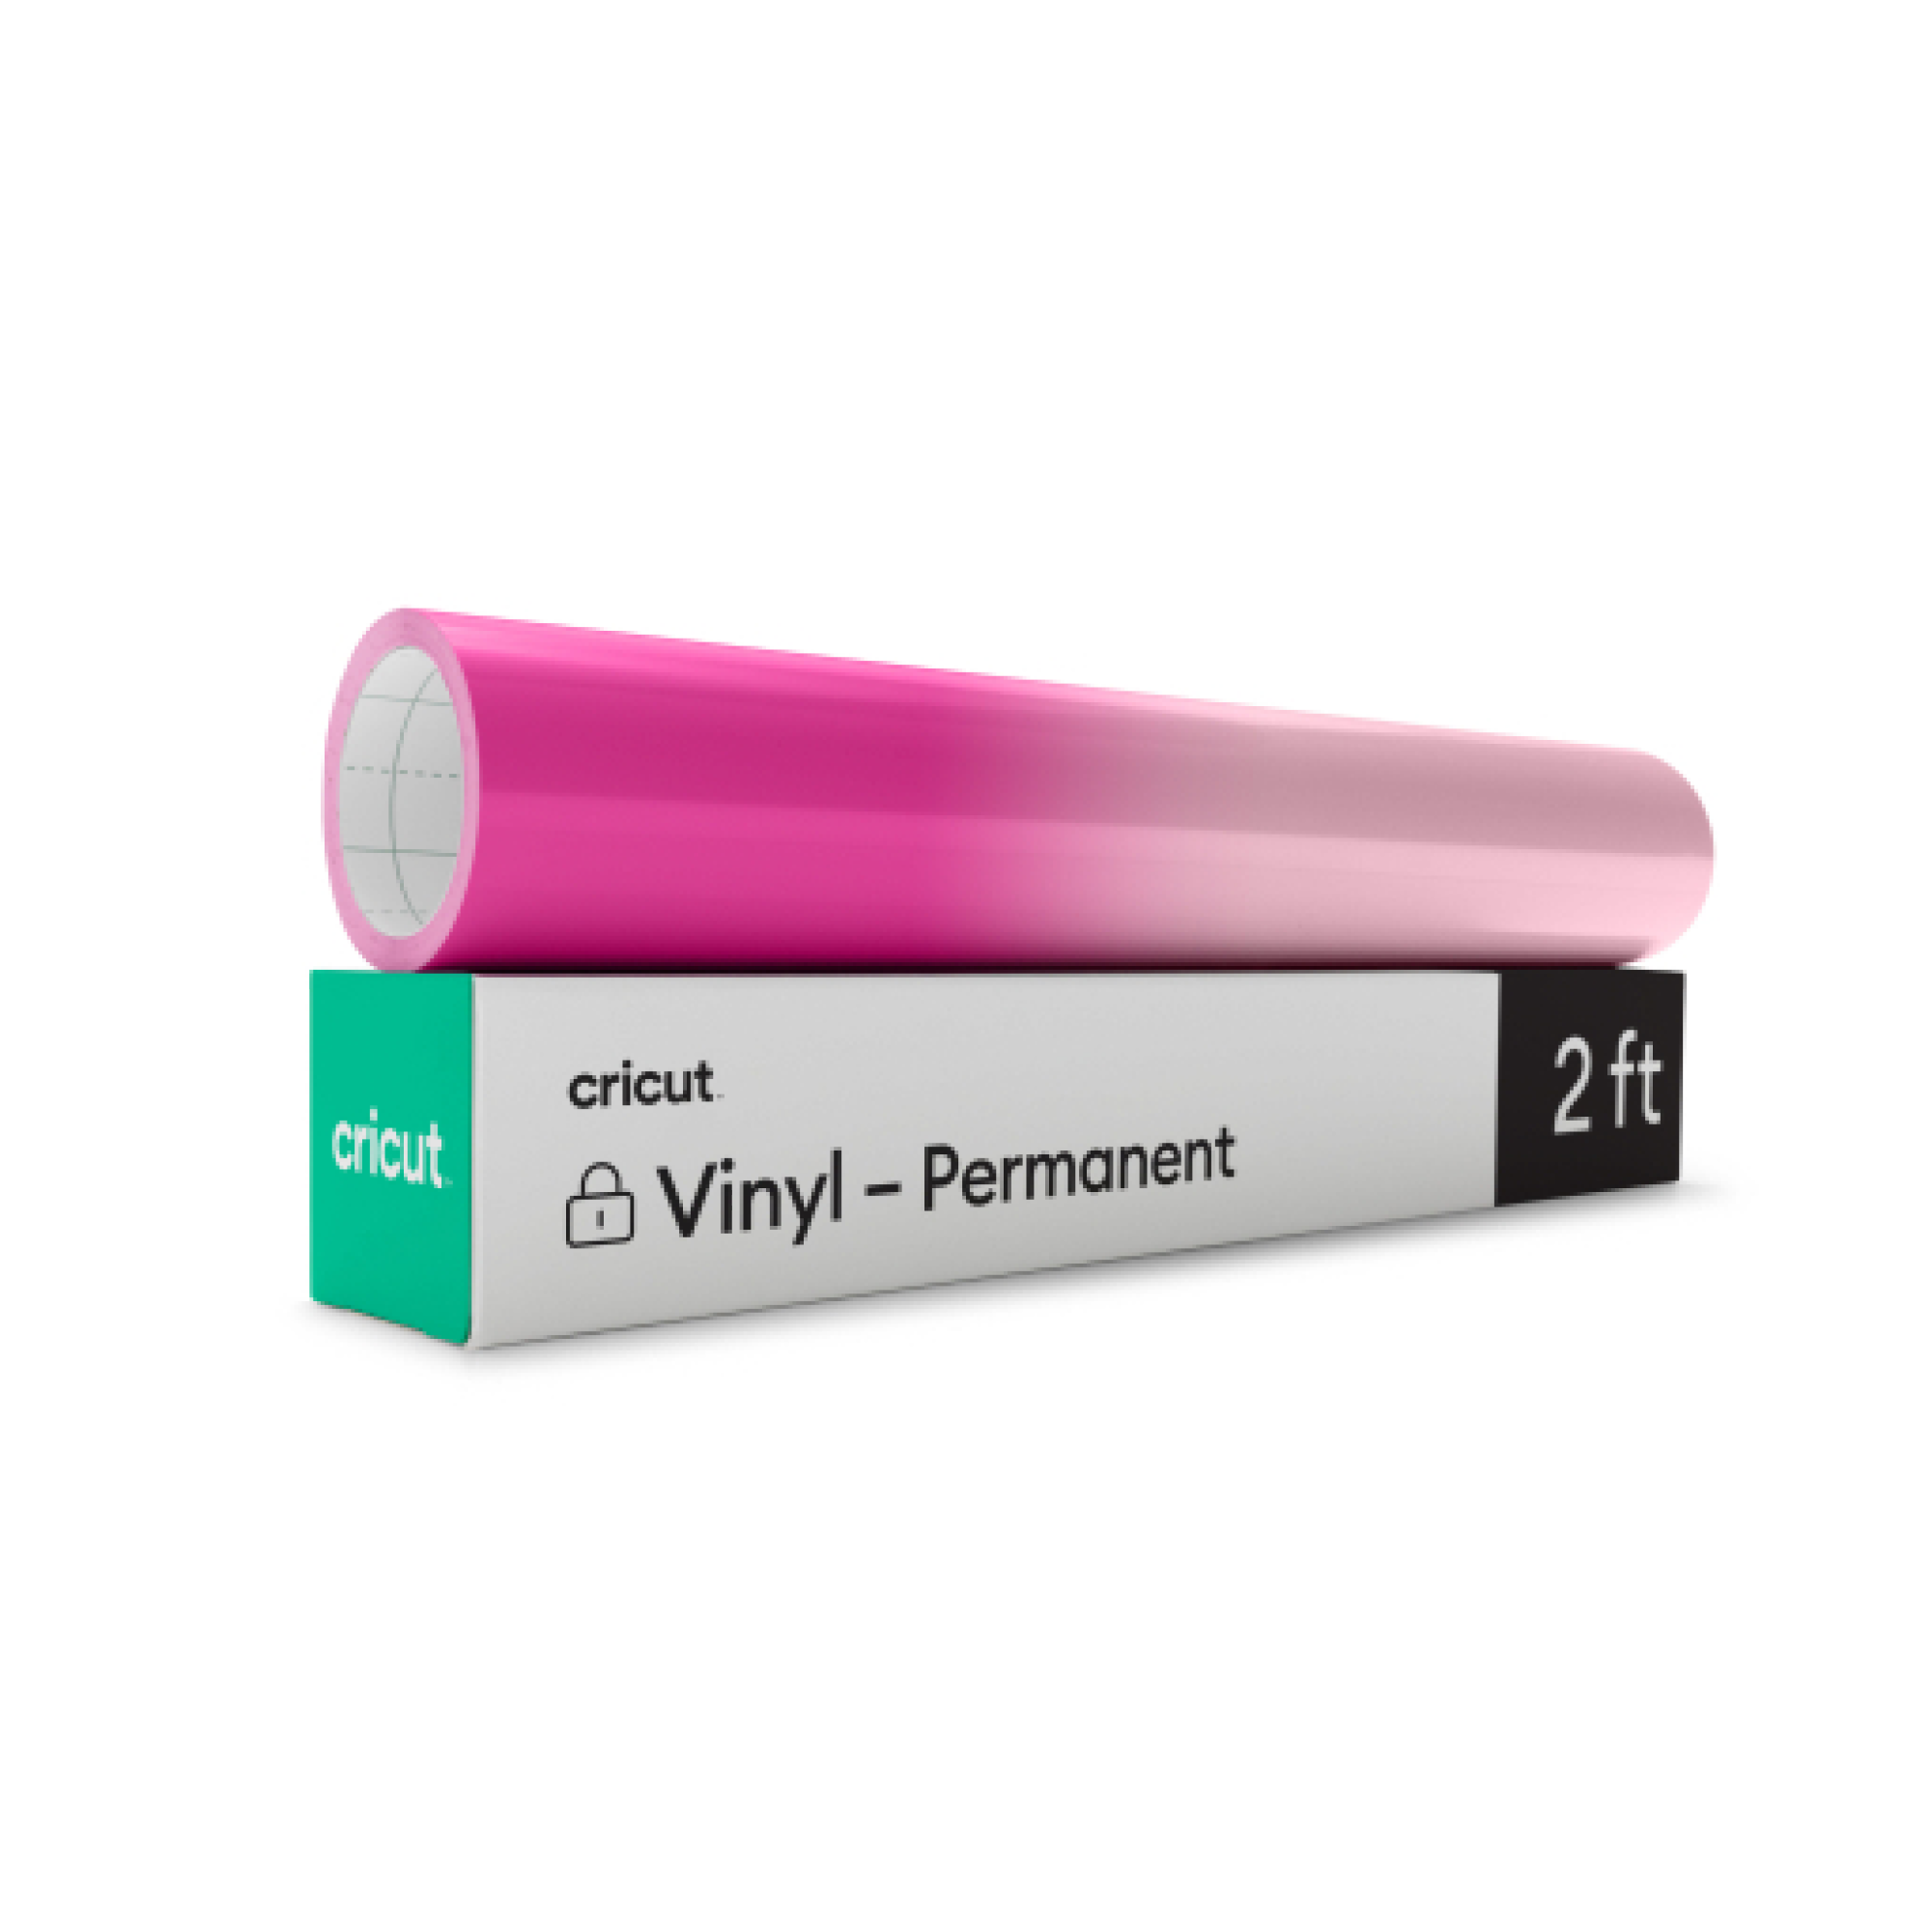 HTVRONT Color Changing Vinyl Permanent Adhesive Vinyl for Cricut,8 Pack HOT  Color Changing Permanent Vinyl-6 Sheets 12x10 Color Changing Vinyl + 2